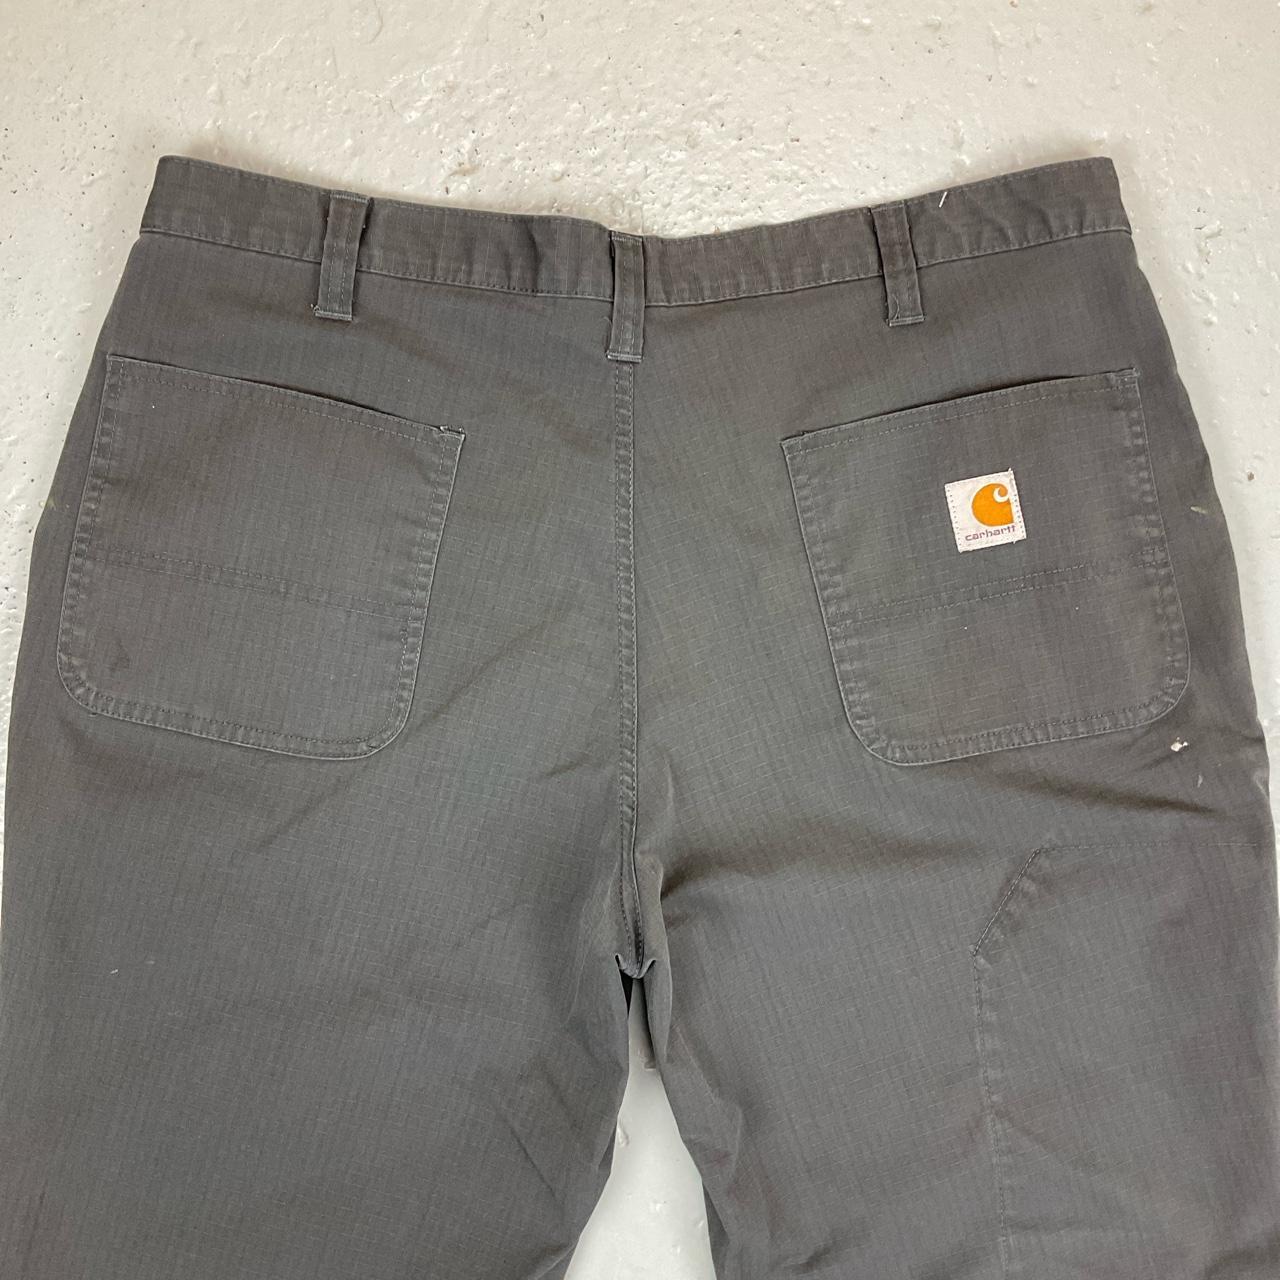 Carhartt pants size 38x32 in great shape! - Depop